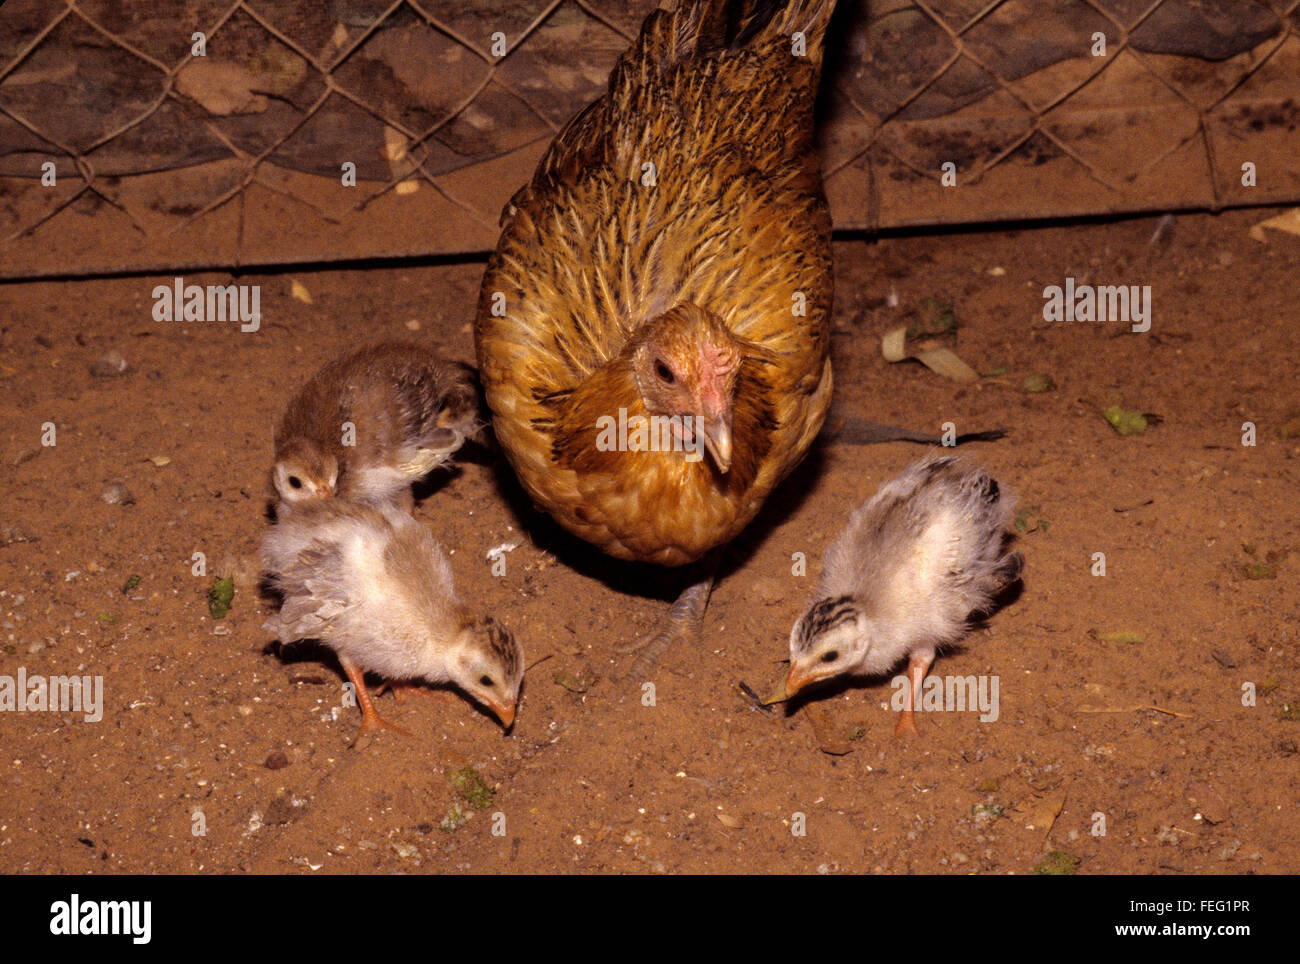 Leihmutterschaft.  Eine Glucke Huhn und ihr Perlhuhn Jugendliche, 2-3 Wochen alt. Stockfoto